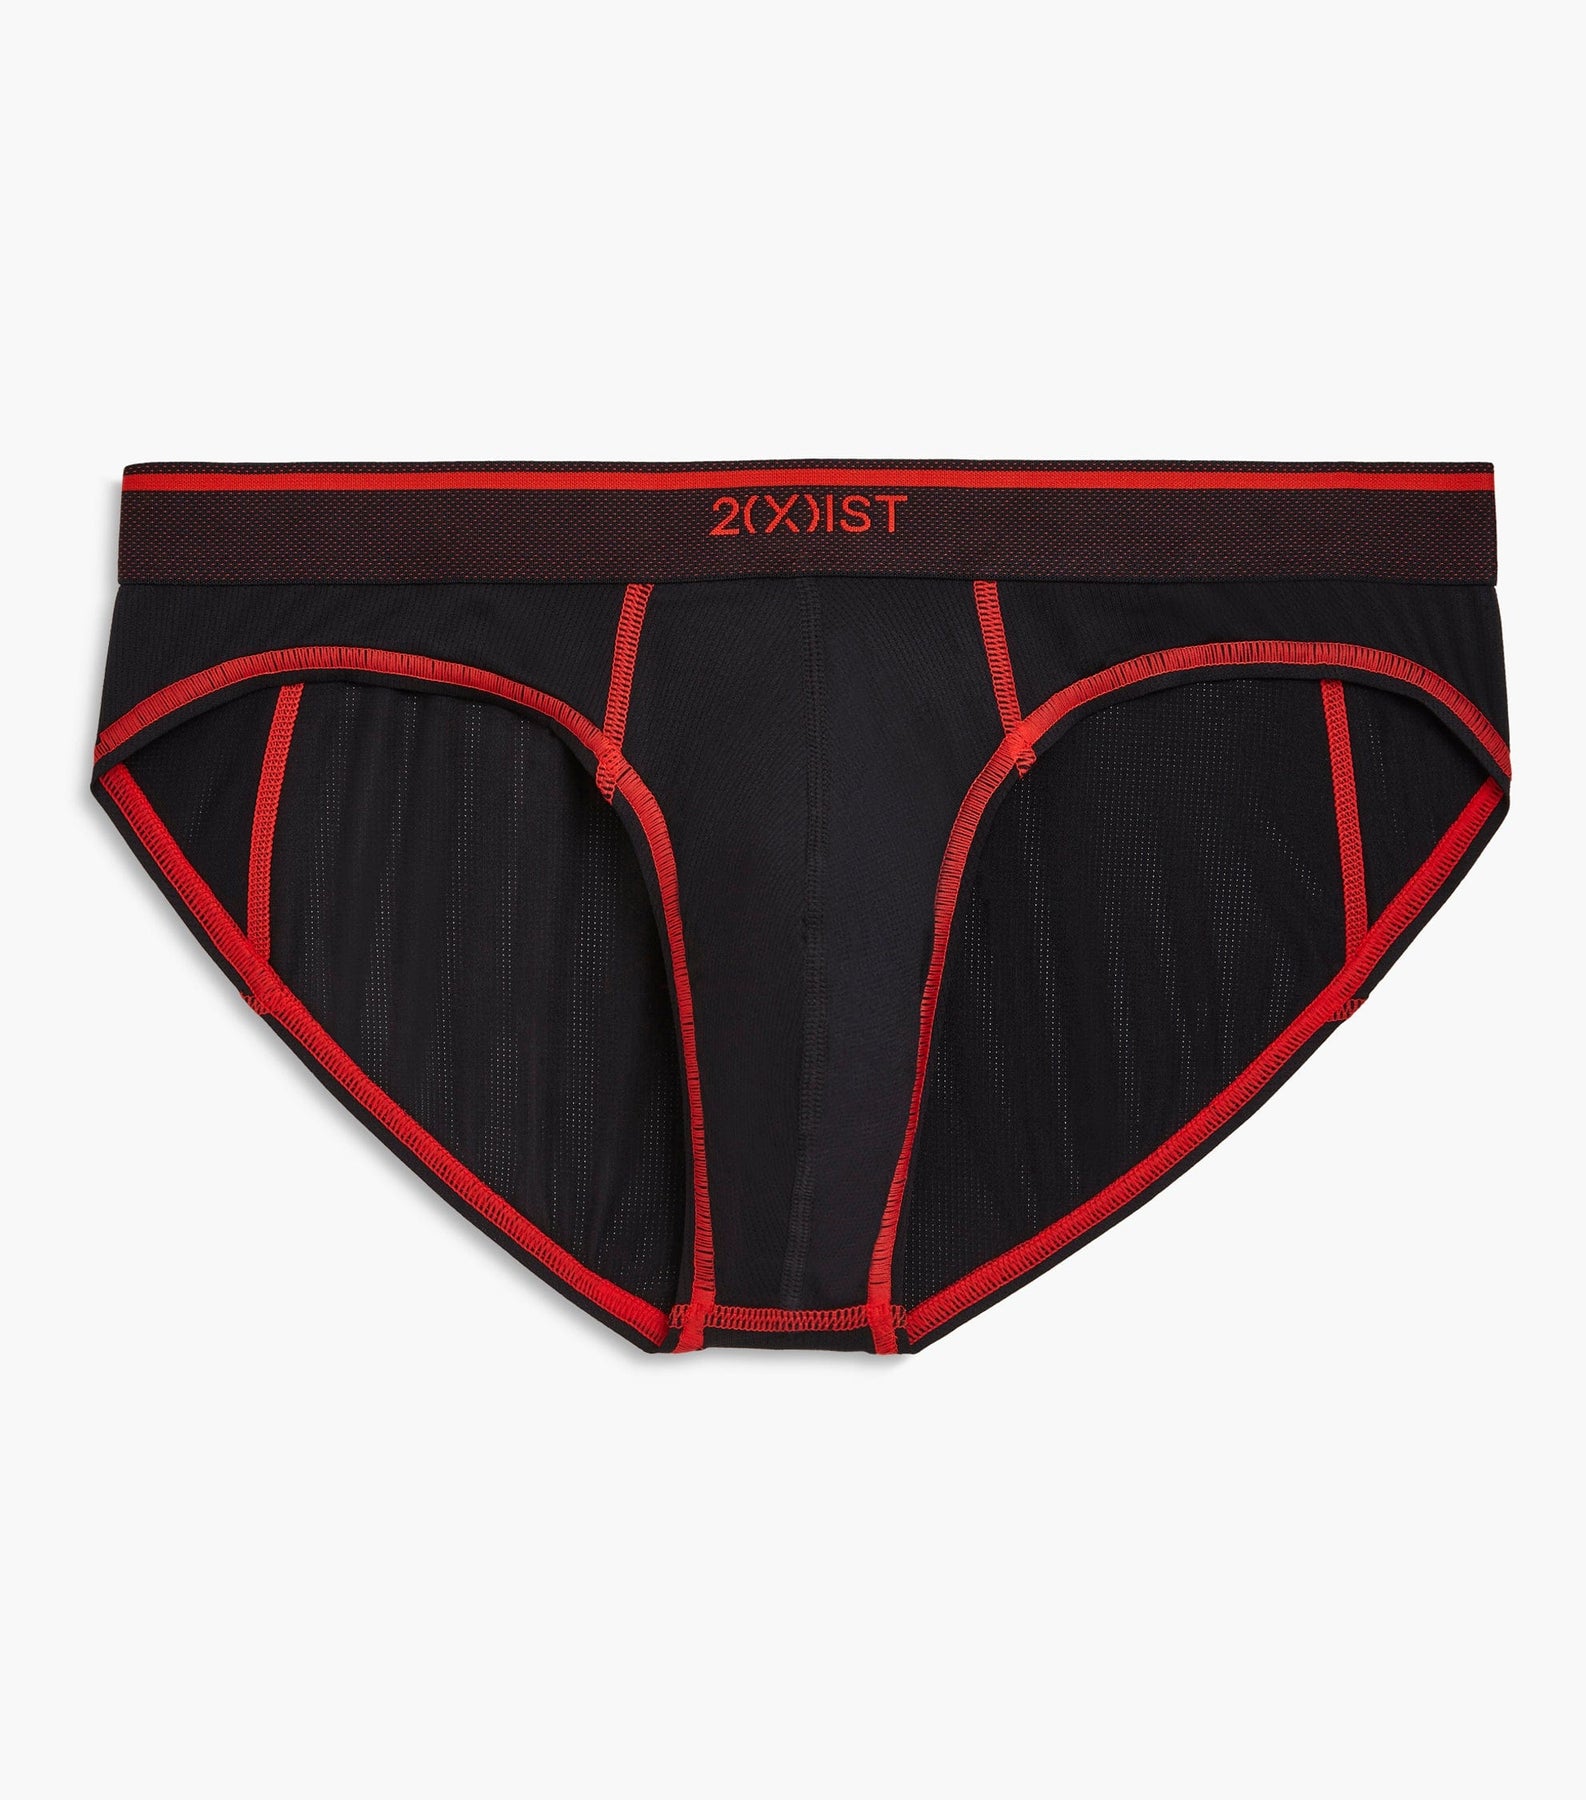 Underwearman on X: Underwear I wish I have part 2 #gay #bottom